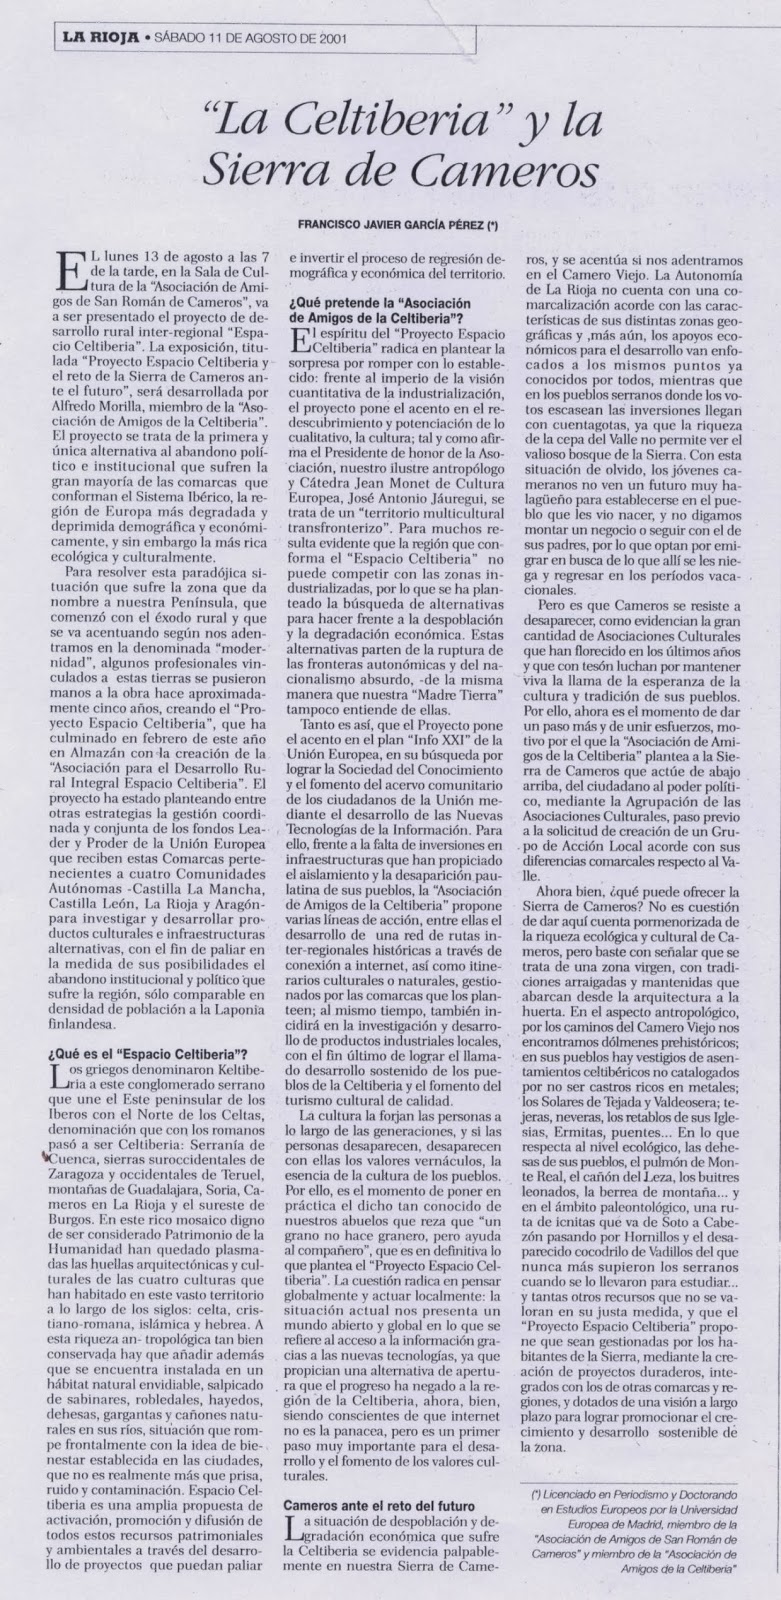 La Celtiberia y la Sierra de Cameros, La Rioja, 11 de agosto de 2001.